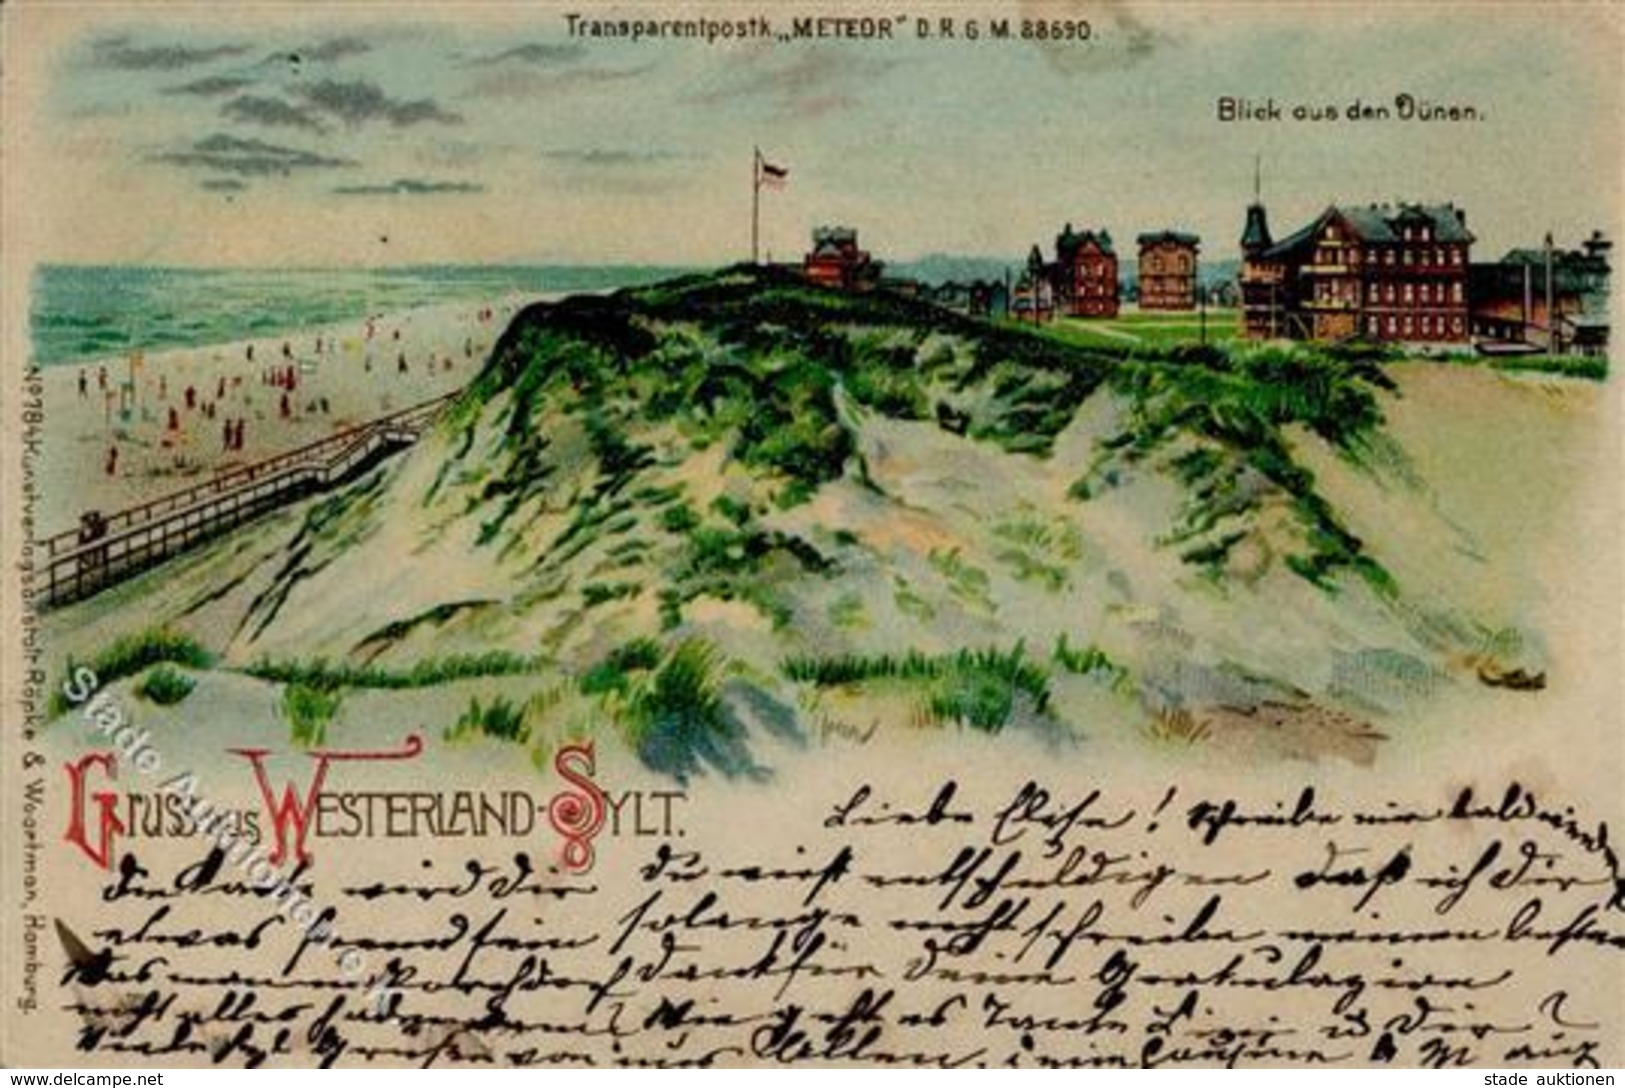 HGL, Verlag Meteor Westerland Sylt 1899 I-II - Halt Gegen Das Licht/Durchscheink.